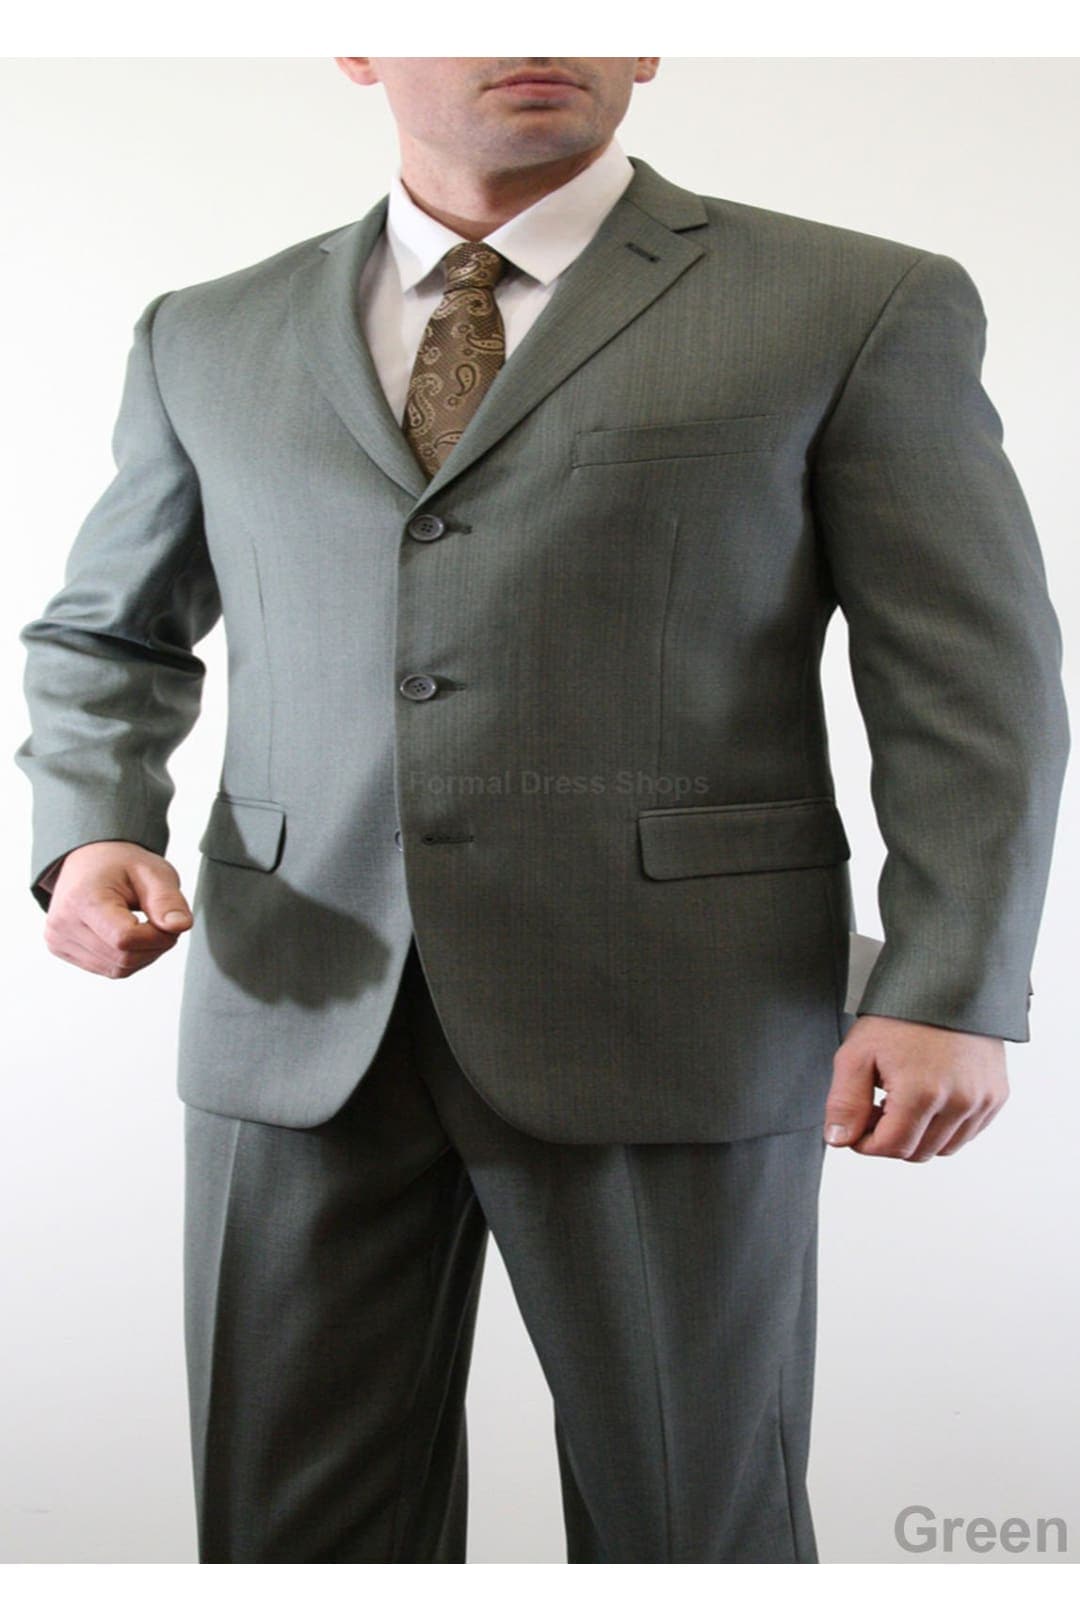 Formal Dress Shops Men’s Solid 2 Piece 3 Button Jacket Suit M103A